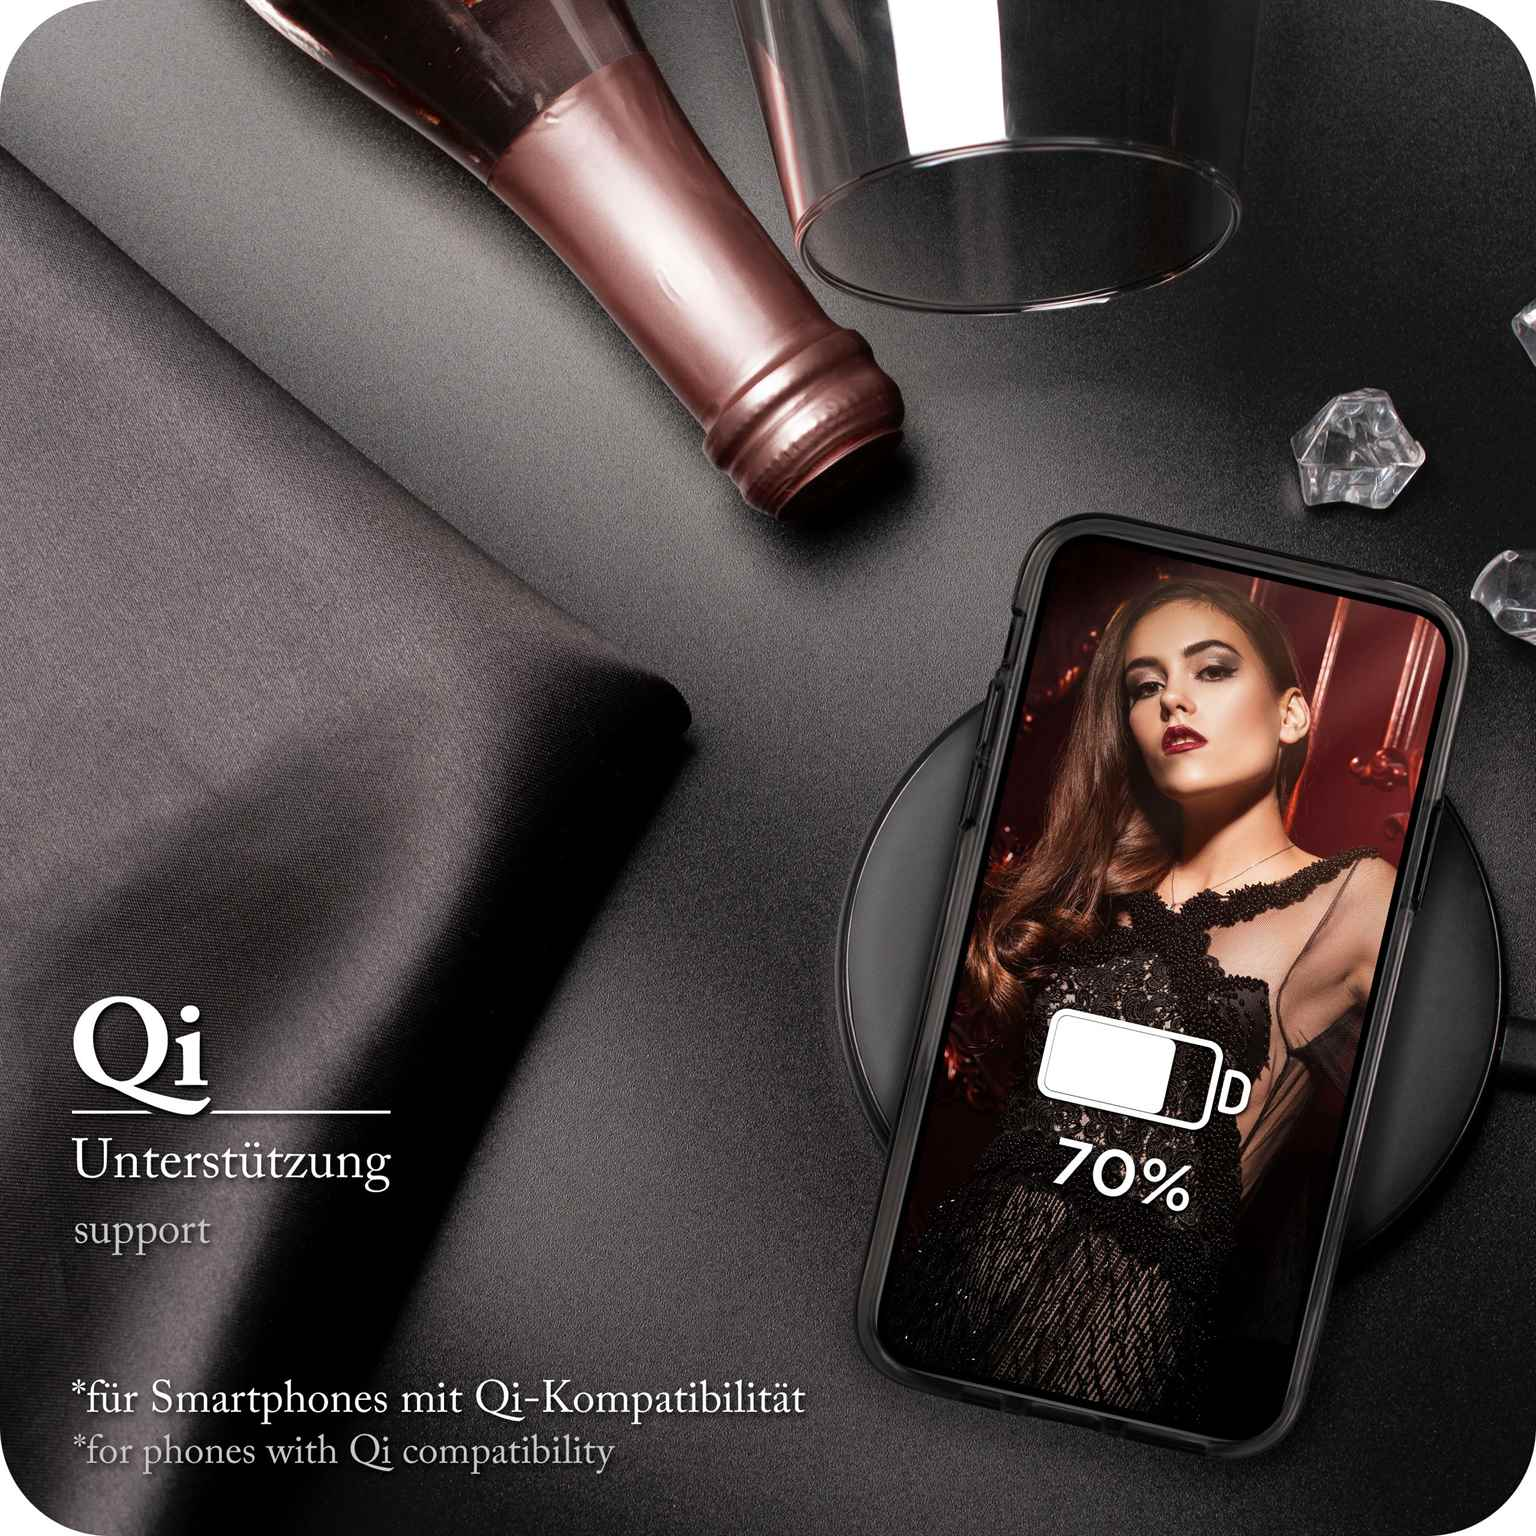 ONEFLOW Glitter Case, Apple, Backcover, Black Glamour XR, iPhone 